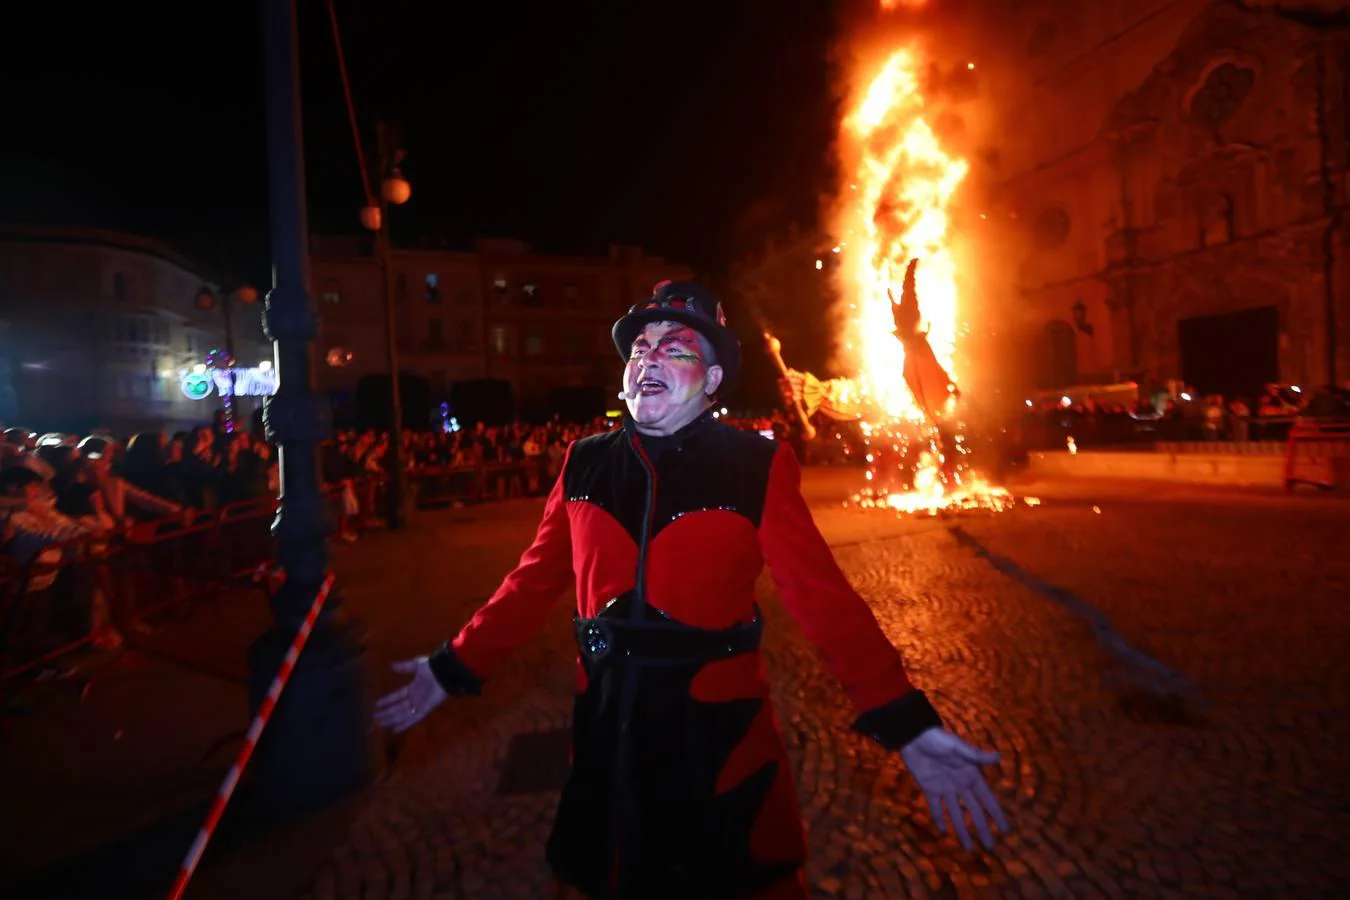 FOTOS: Pregón y quema del dios Momo del Carnaval de Cádiz 2019